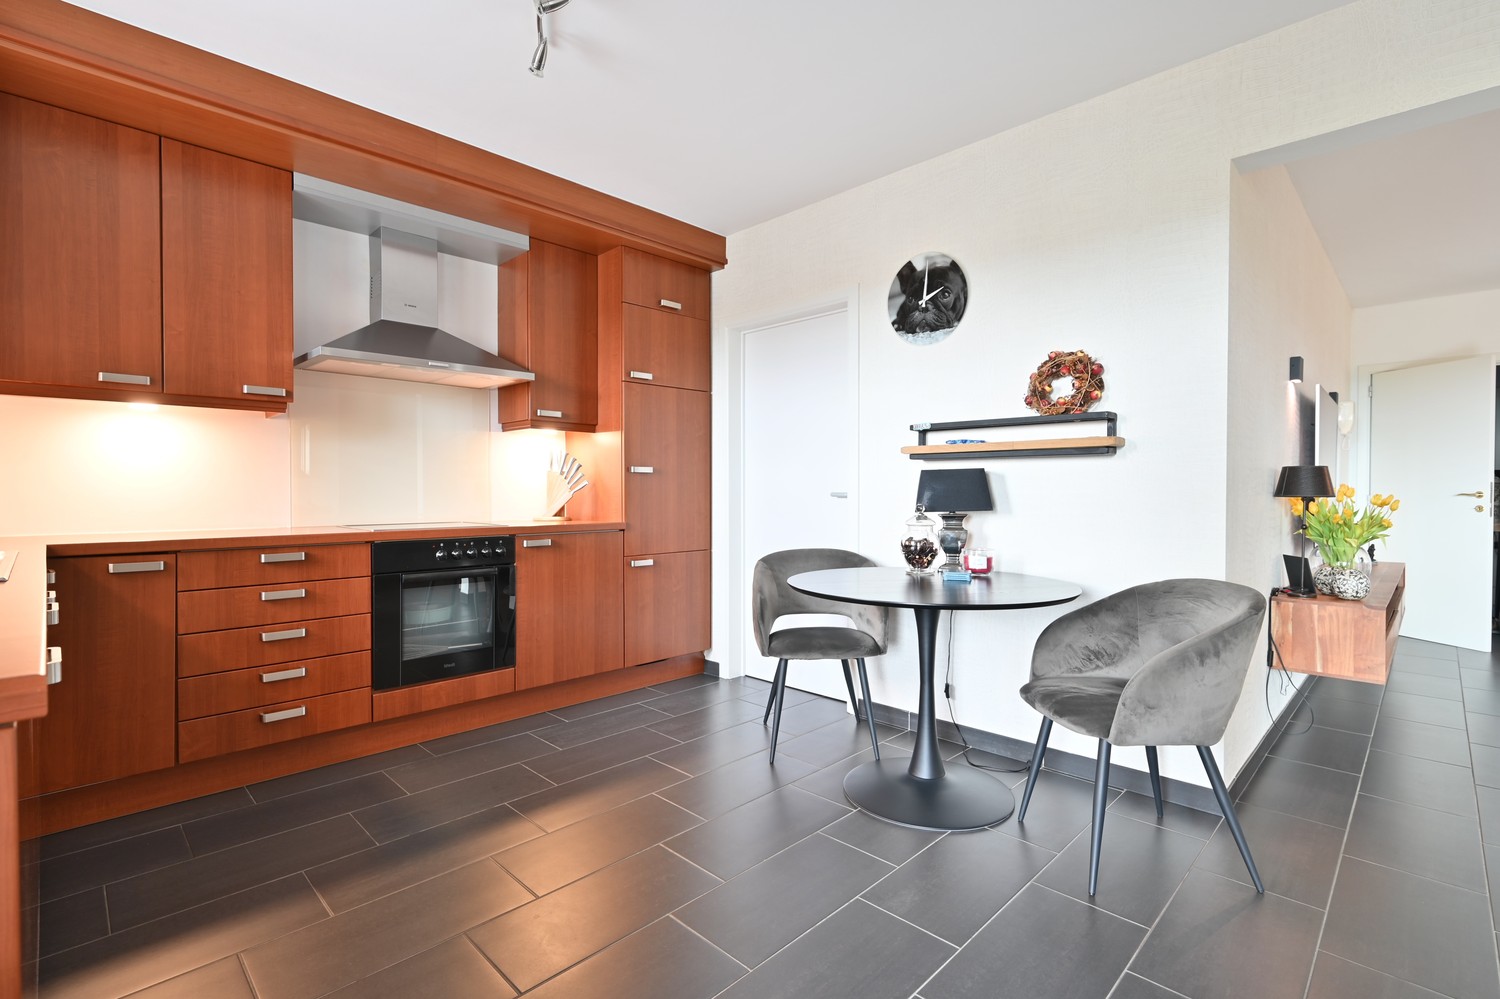 Modern, gelijkvloers hoekappartement van 125 m² met riant zonneterras en garagebox, rustig gelegen in Residentie La Scala te Lanaken-Gellik foto 10